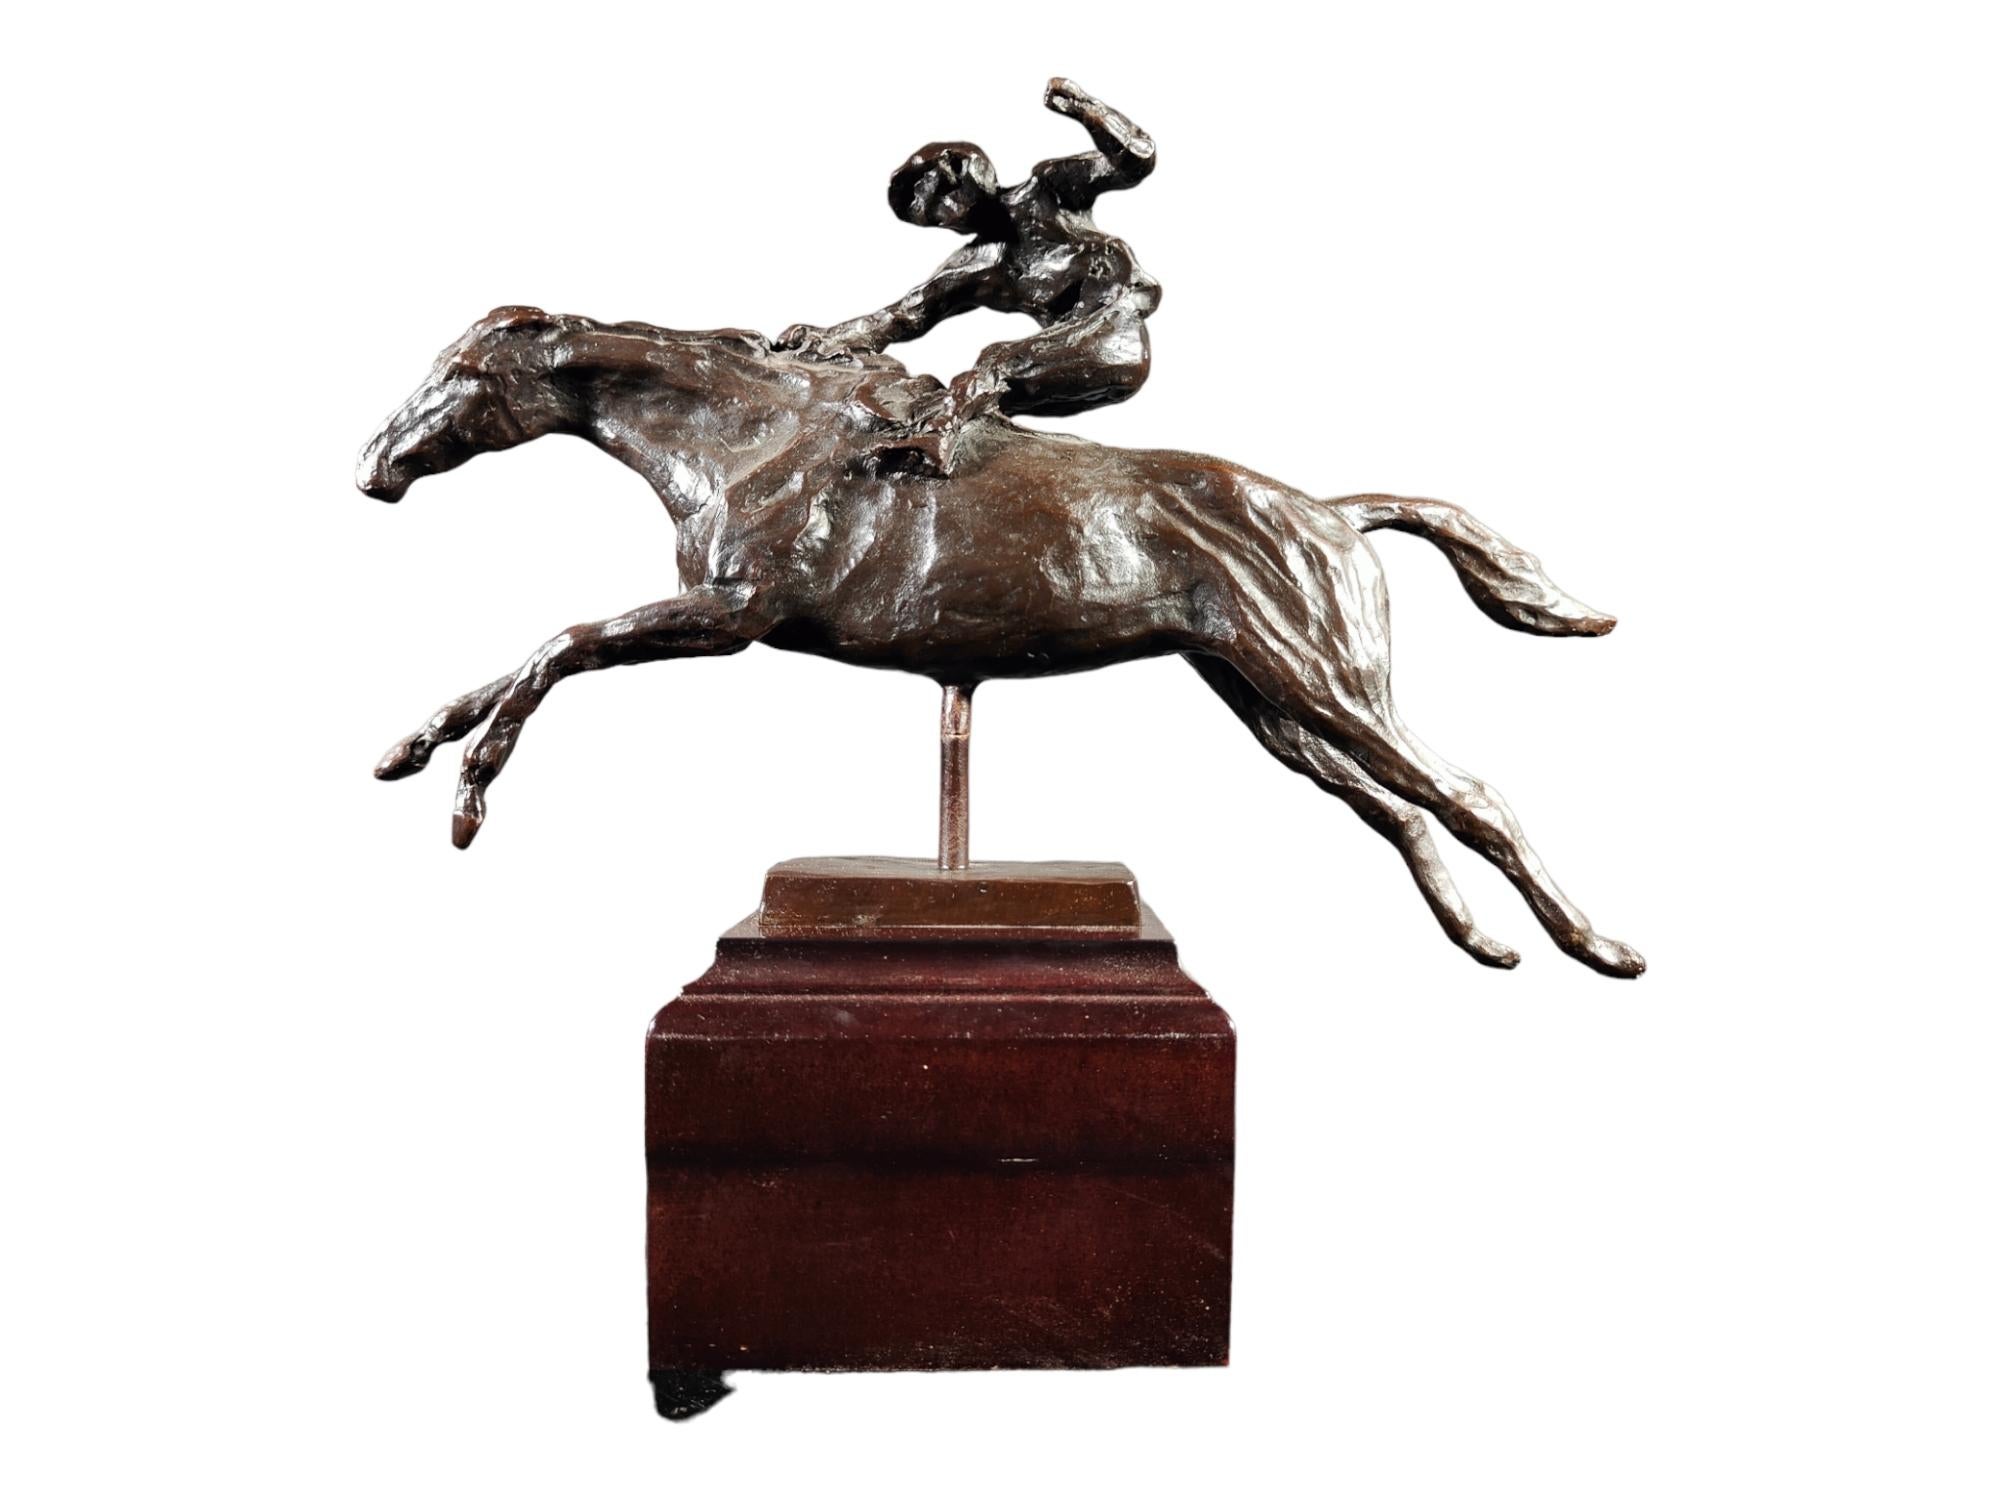 Sculpture en bronze représentant un joueur de polo sur une base en bois. Il date des années 70 et n'est apparemment pas signé. Bon état. Mesures : 36x28x18 cm